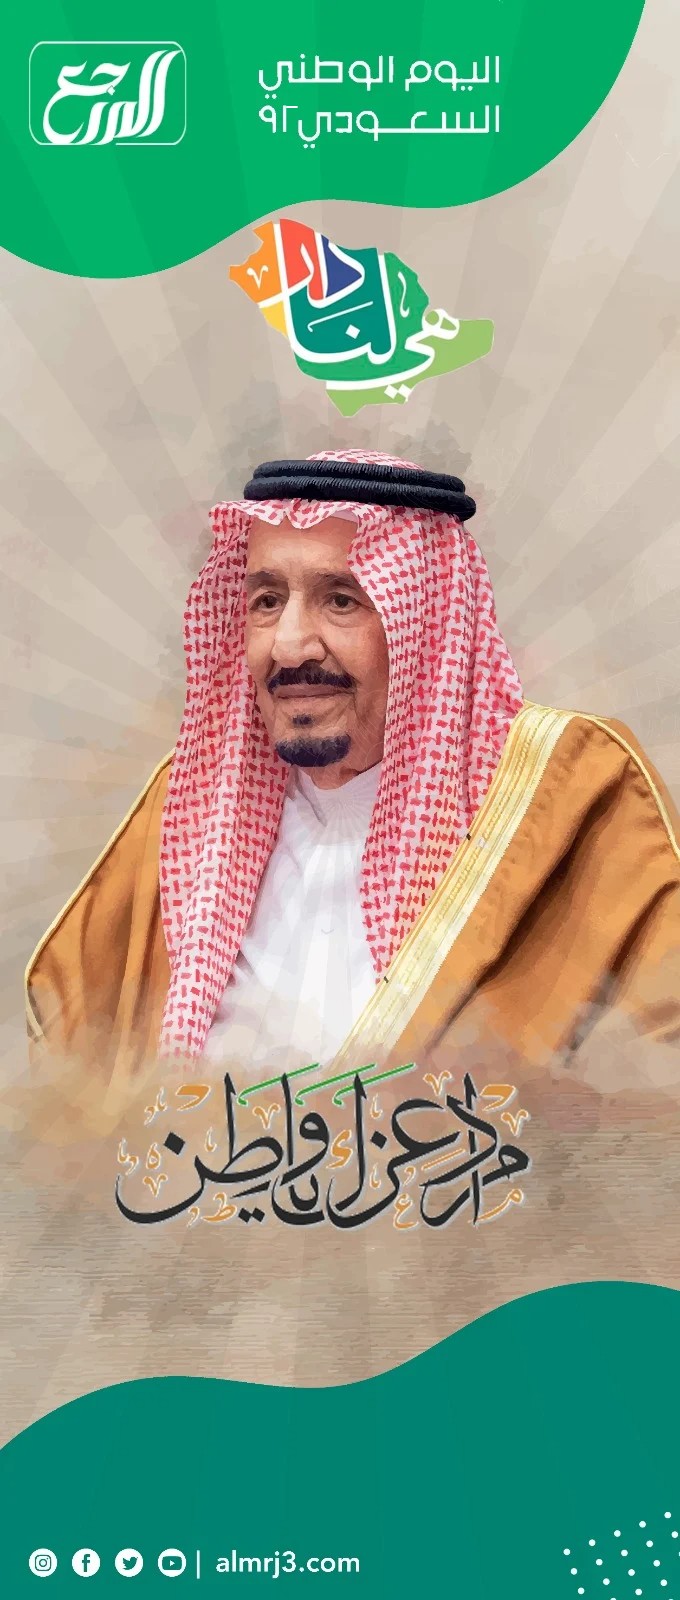 بنر اليوم الوطني السعودي الملك سلمان